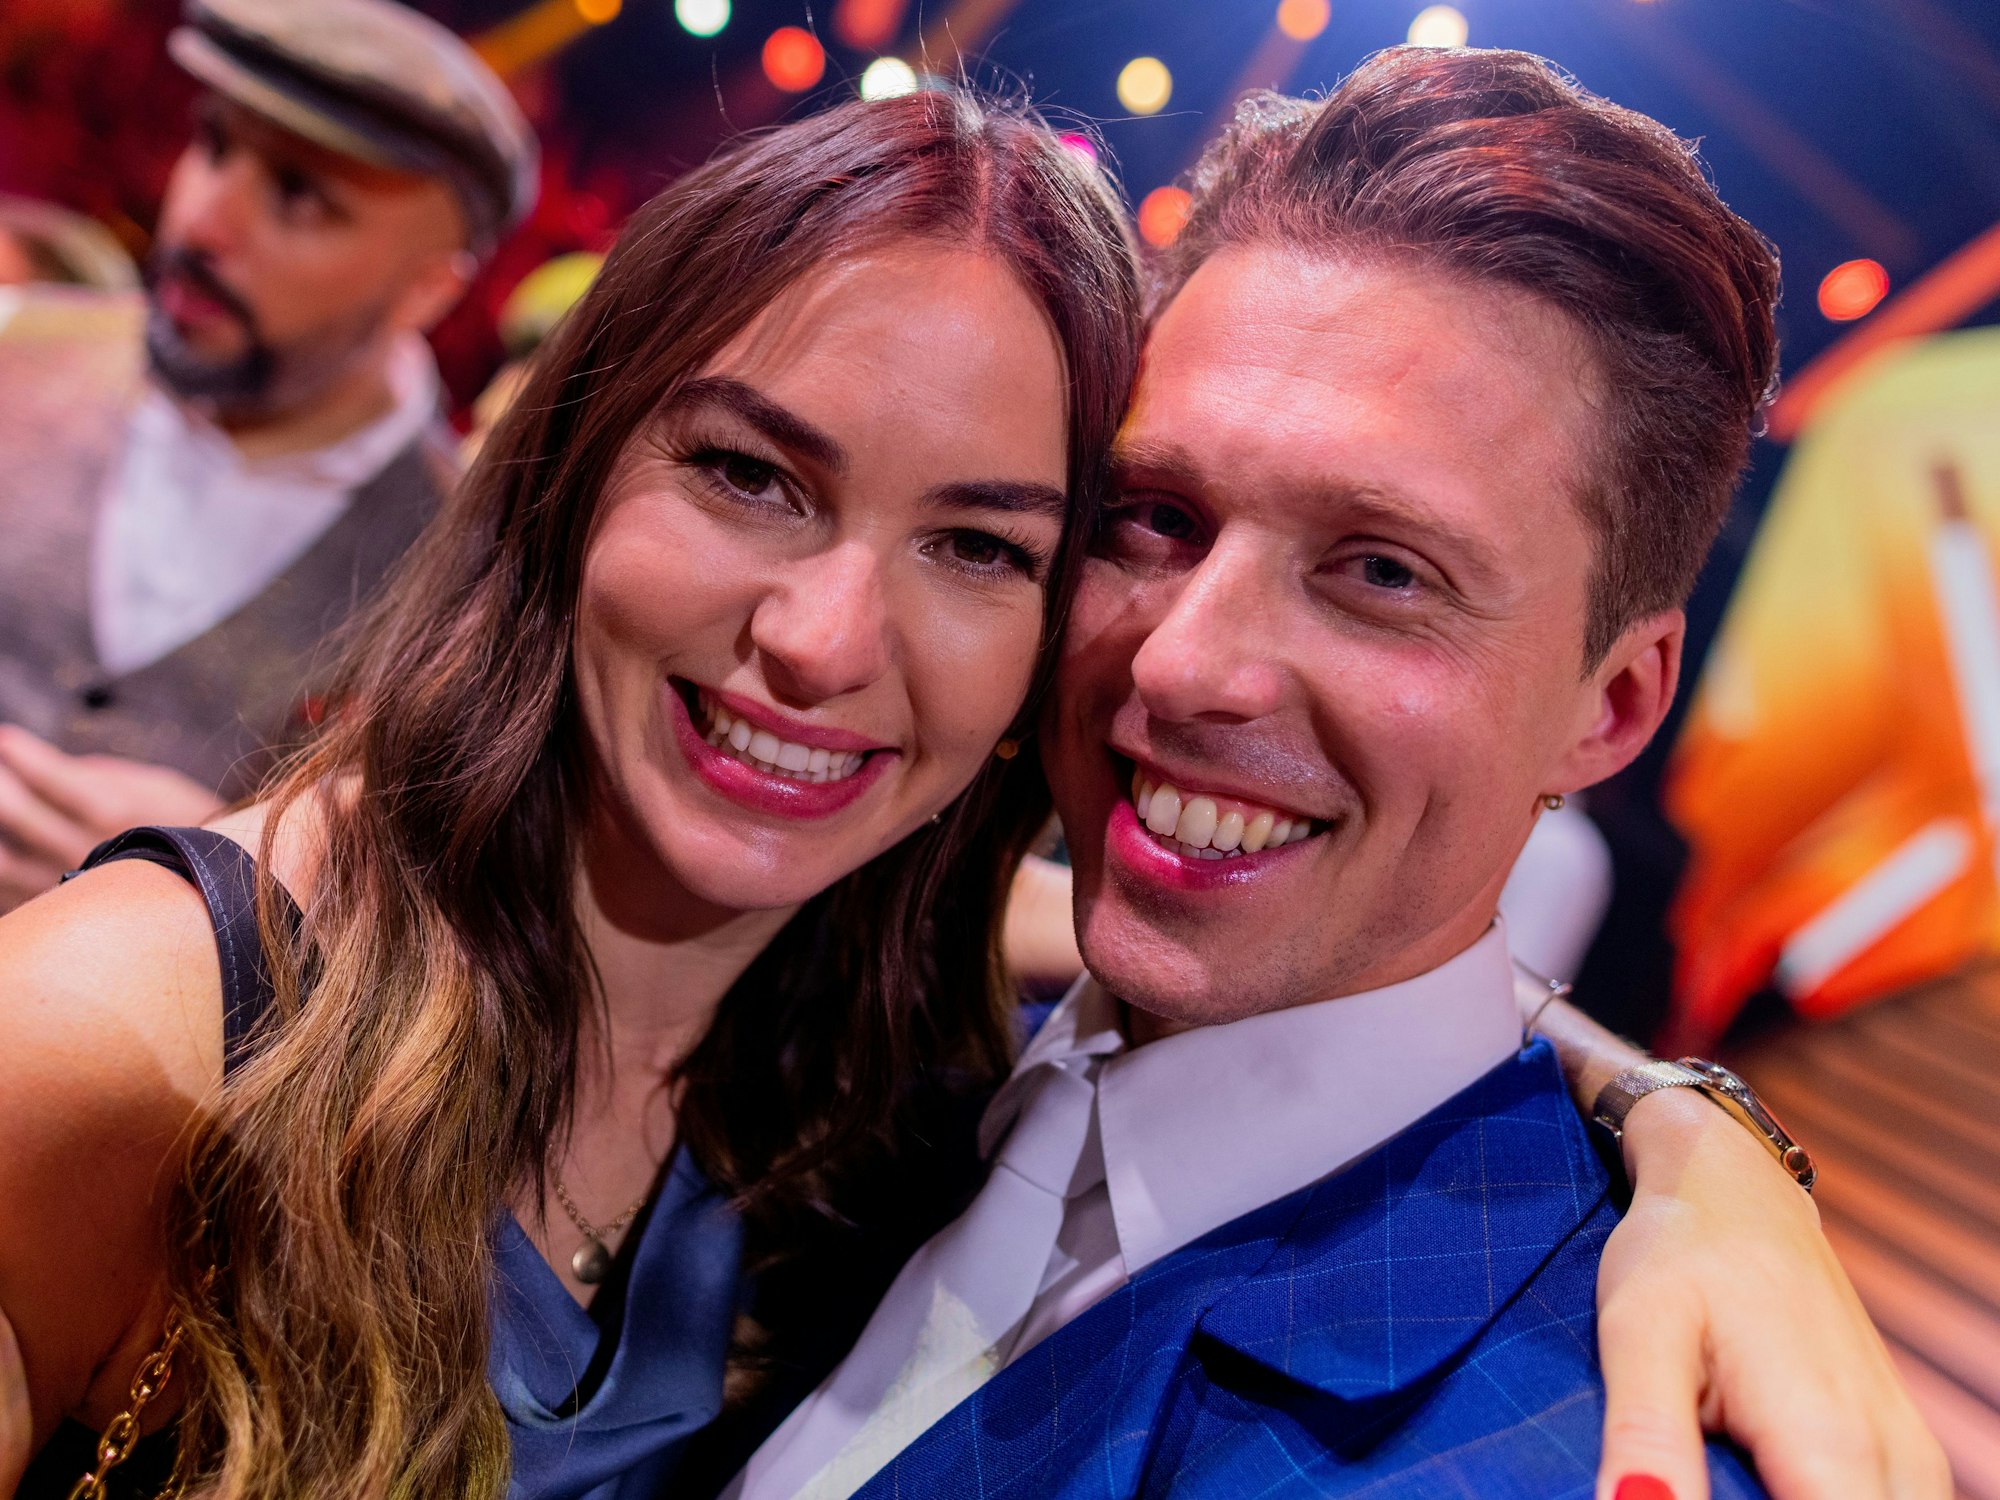 Renata Lusin und ihr Mann Valentin Lusin, beide Profitänzer, liegen sich im Anschluss an die RTL-Tanzshow "Let's Dance" im Coloneum in den Armen.